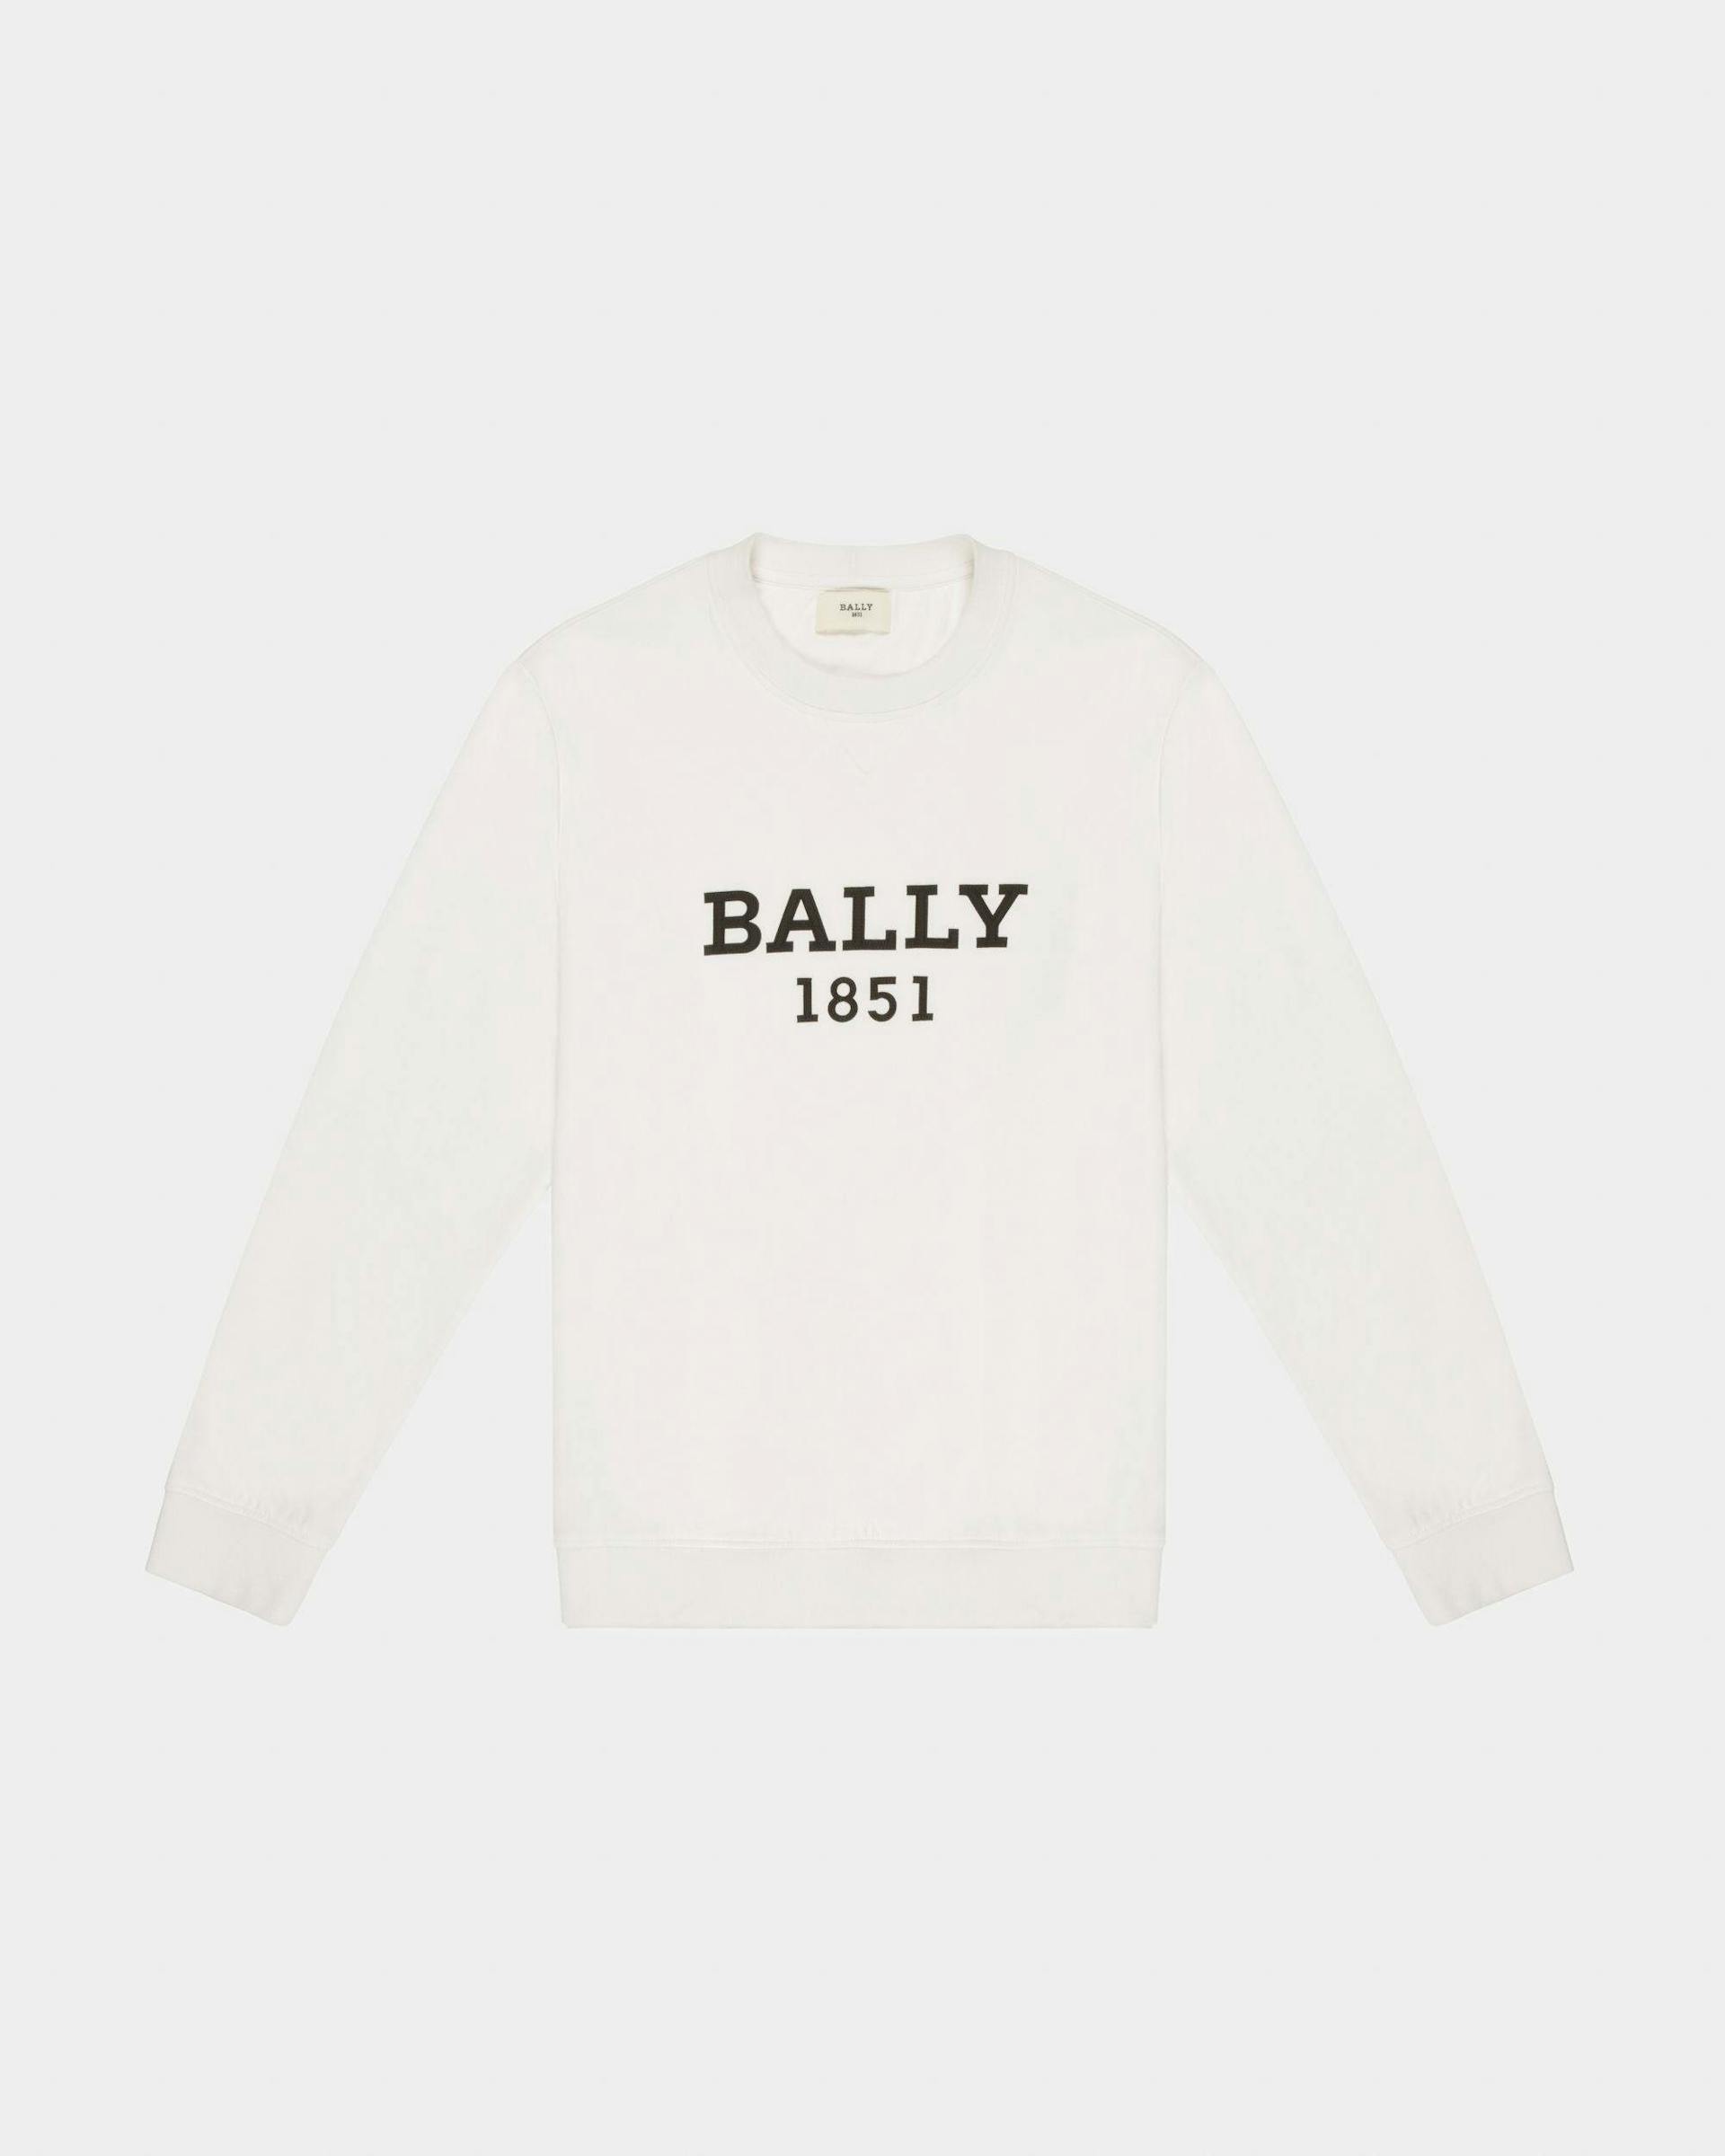 Sweat-Shirt Blanc En Coton Biologique - Homme - Bally - 01